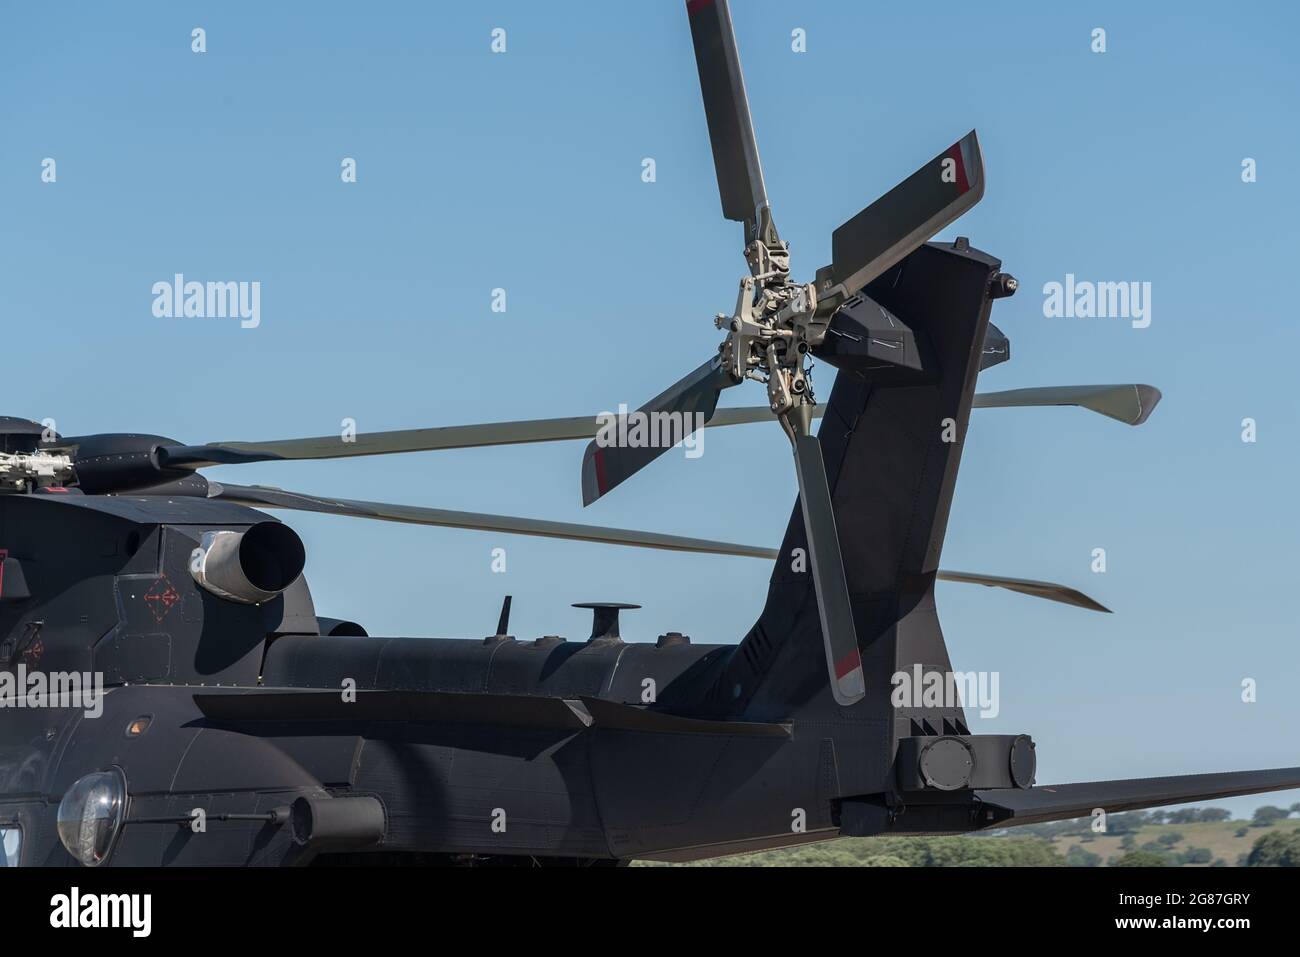 Dettagli dell'elica, un moderno elicottero militare americano, pronto a volare per un'operazione tattica, sulla pista. Foto Stock